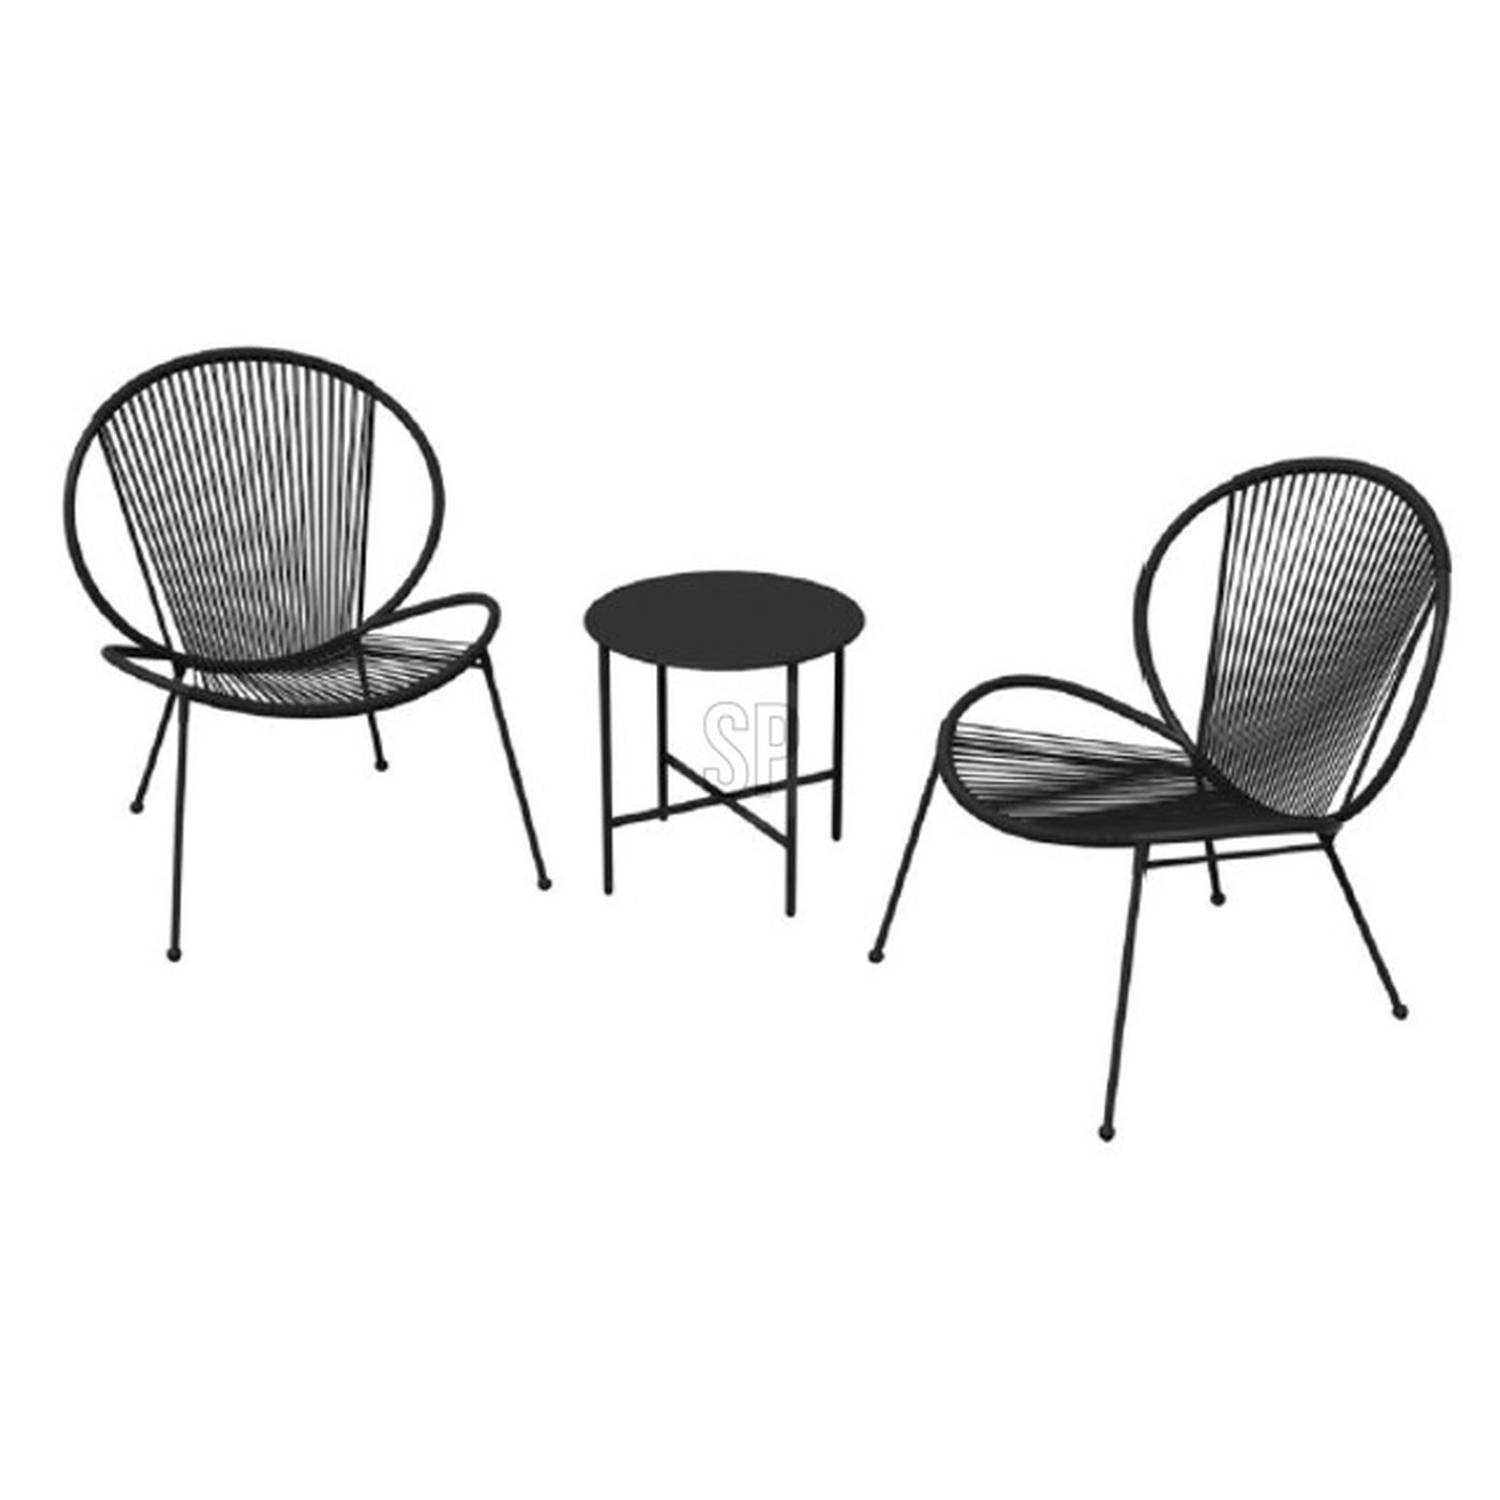 Relaxwonen - tuinset - zwart - tafel + 2 stoelen